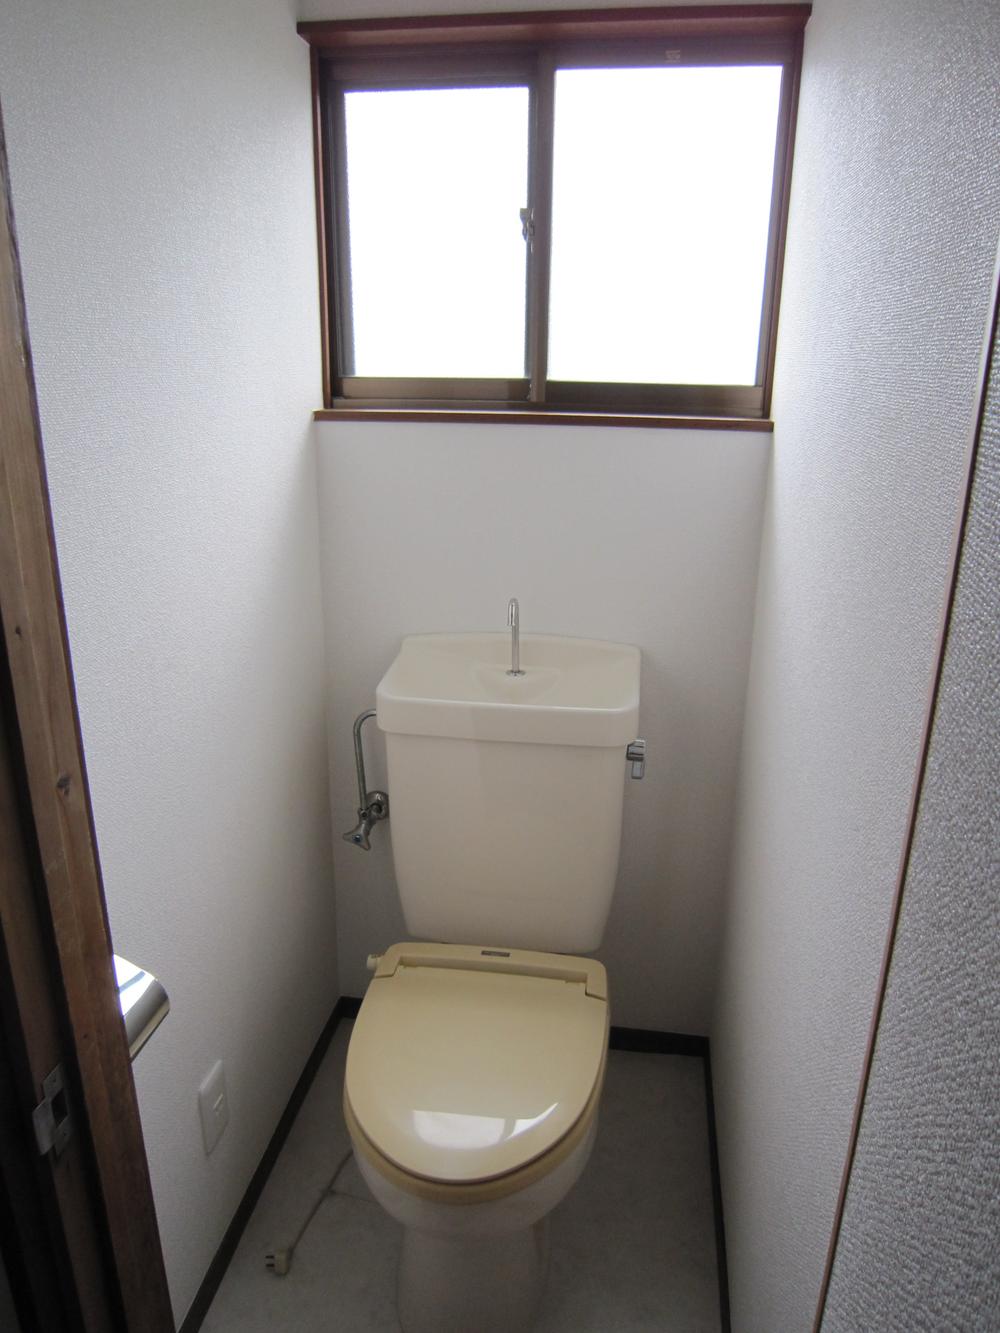 Toilet. Indoor (June 2010) Shooting